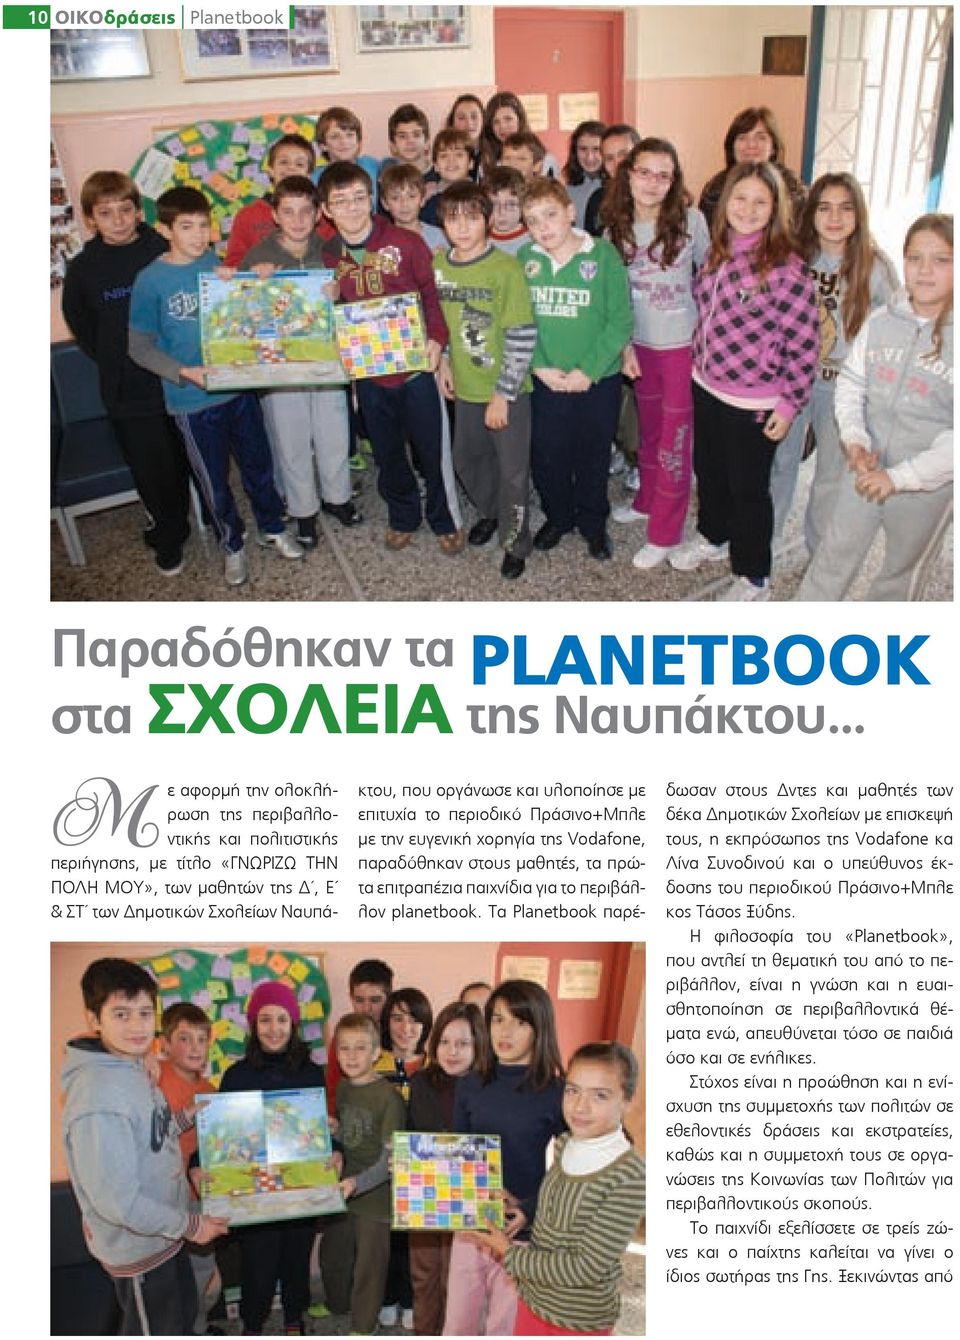 επιτυχία το περιοδικό Πράσινο+Μπλε με την ευγενική χορηγία της Vodafone, παραδόθηκαν στους μαθητές, τα πρώτα επιτραπέζια παιχνίδια για το περιβάλλον planetbook.